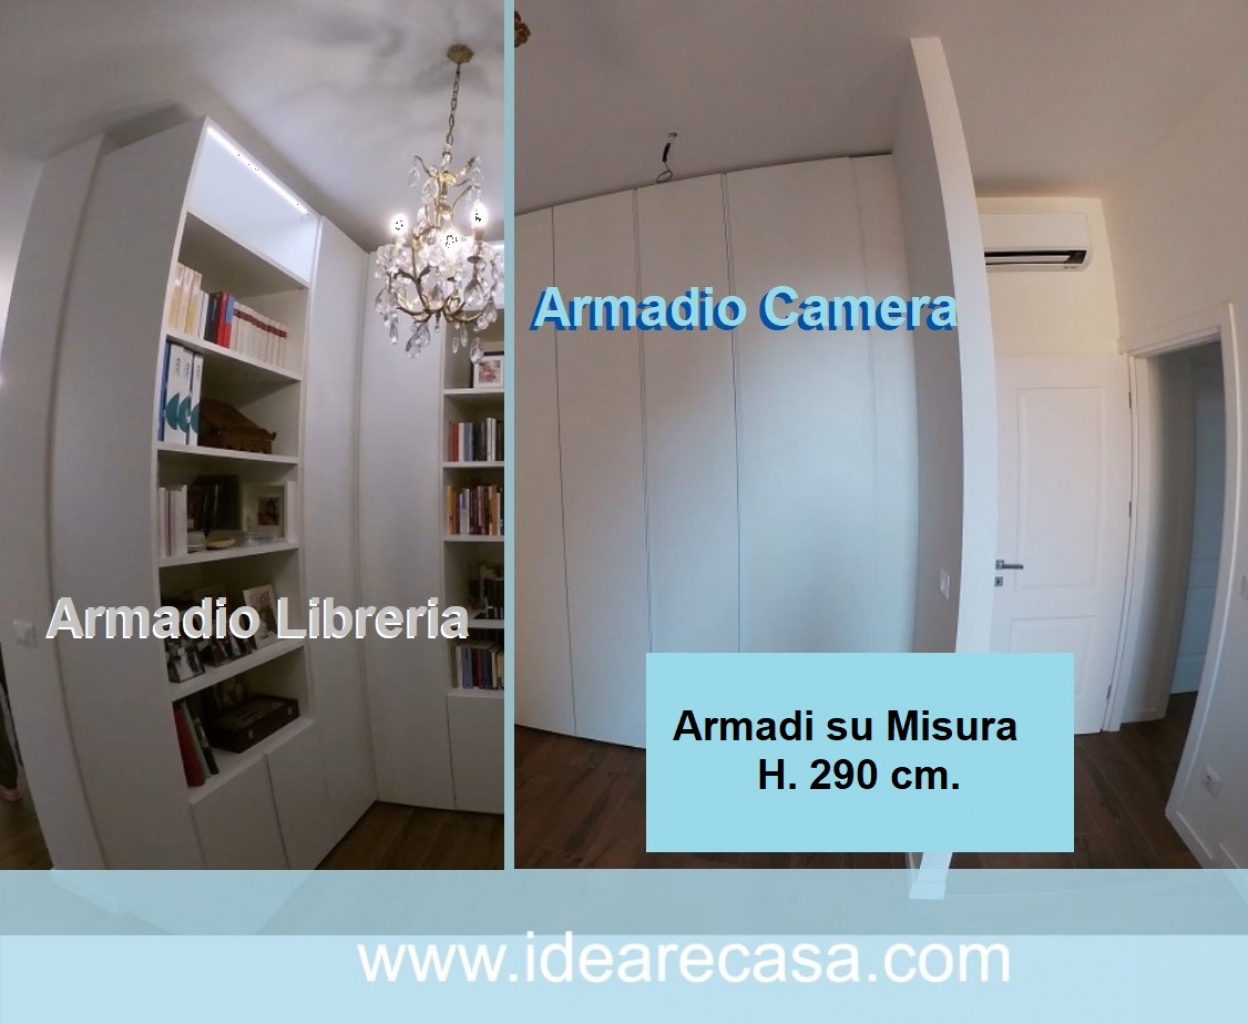 Armadio Camera H.290 + Armadio Libreria Ingresso H.290